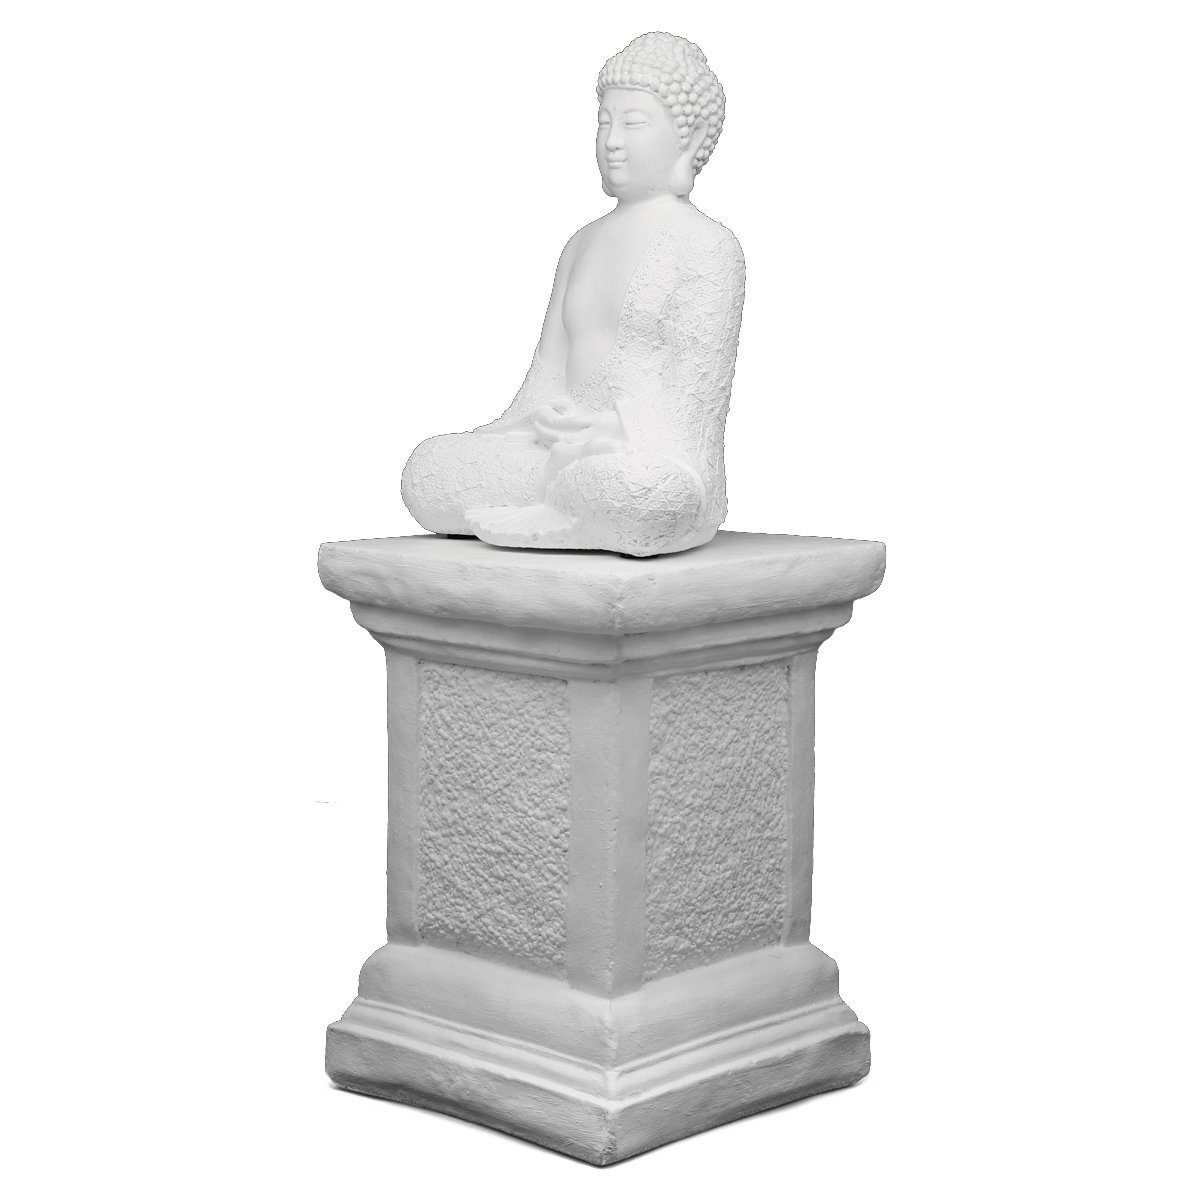 Tiefes Kunsthandwerk Buddhafigur Buddha weiß Figur Made aus winterfest, Germany Säule in mit - frostsicher, Stein Statue